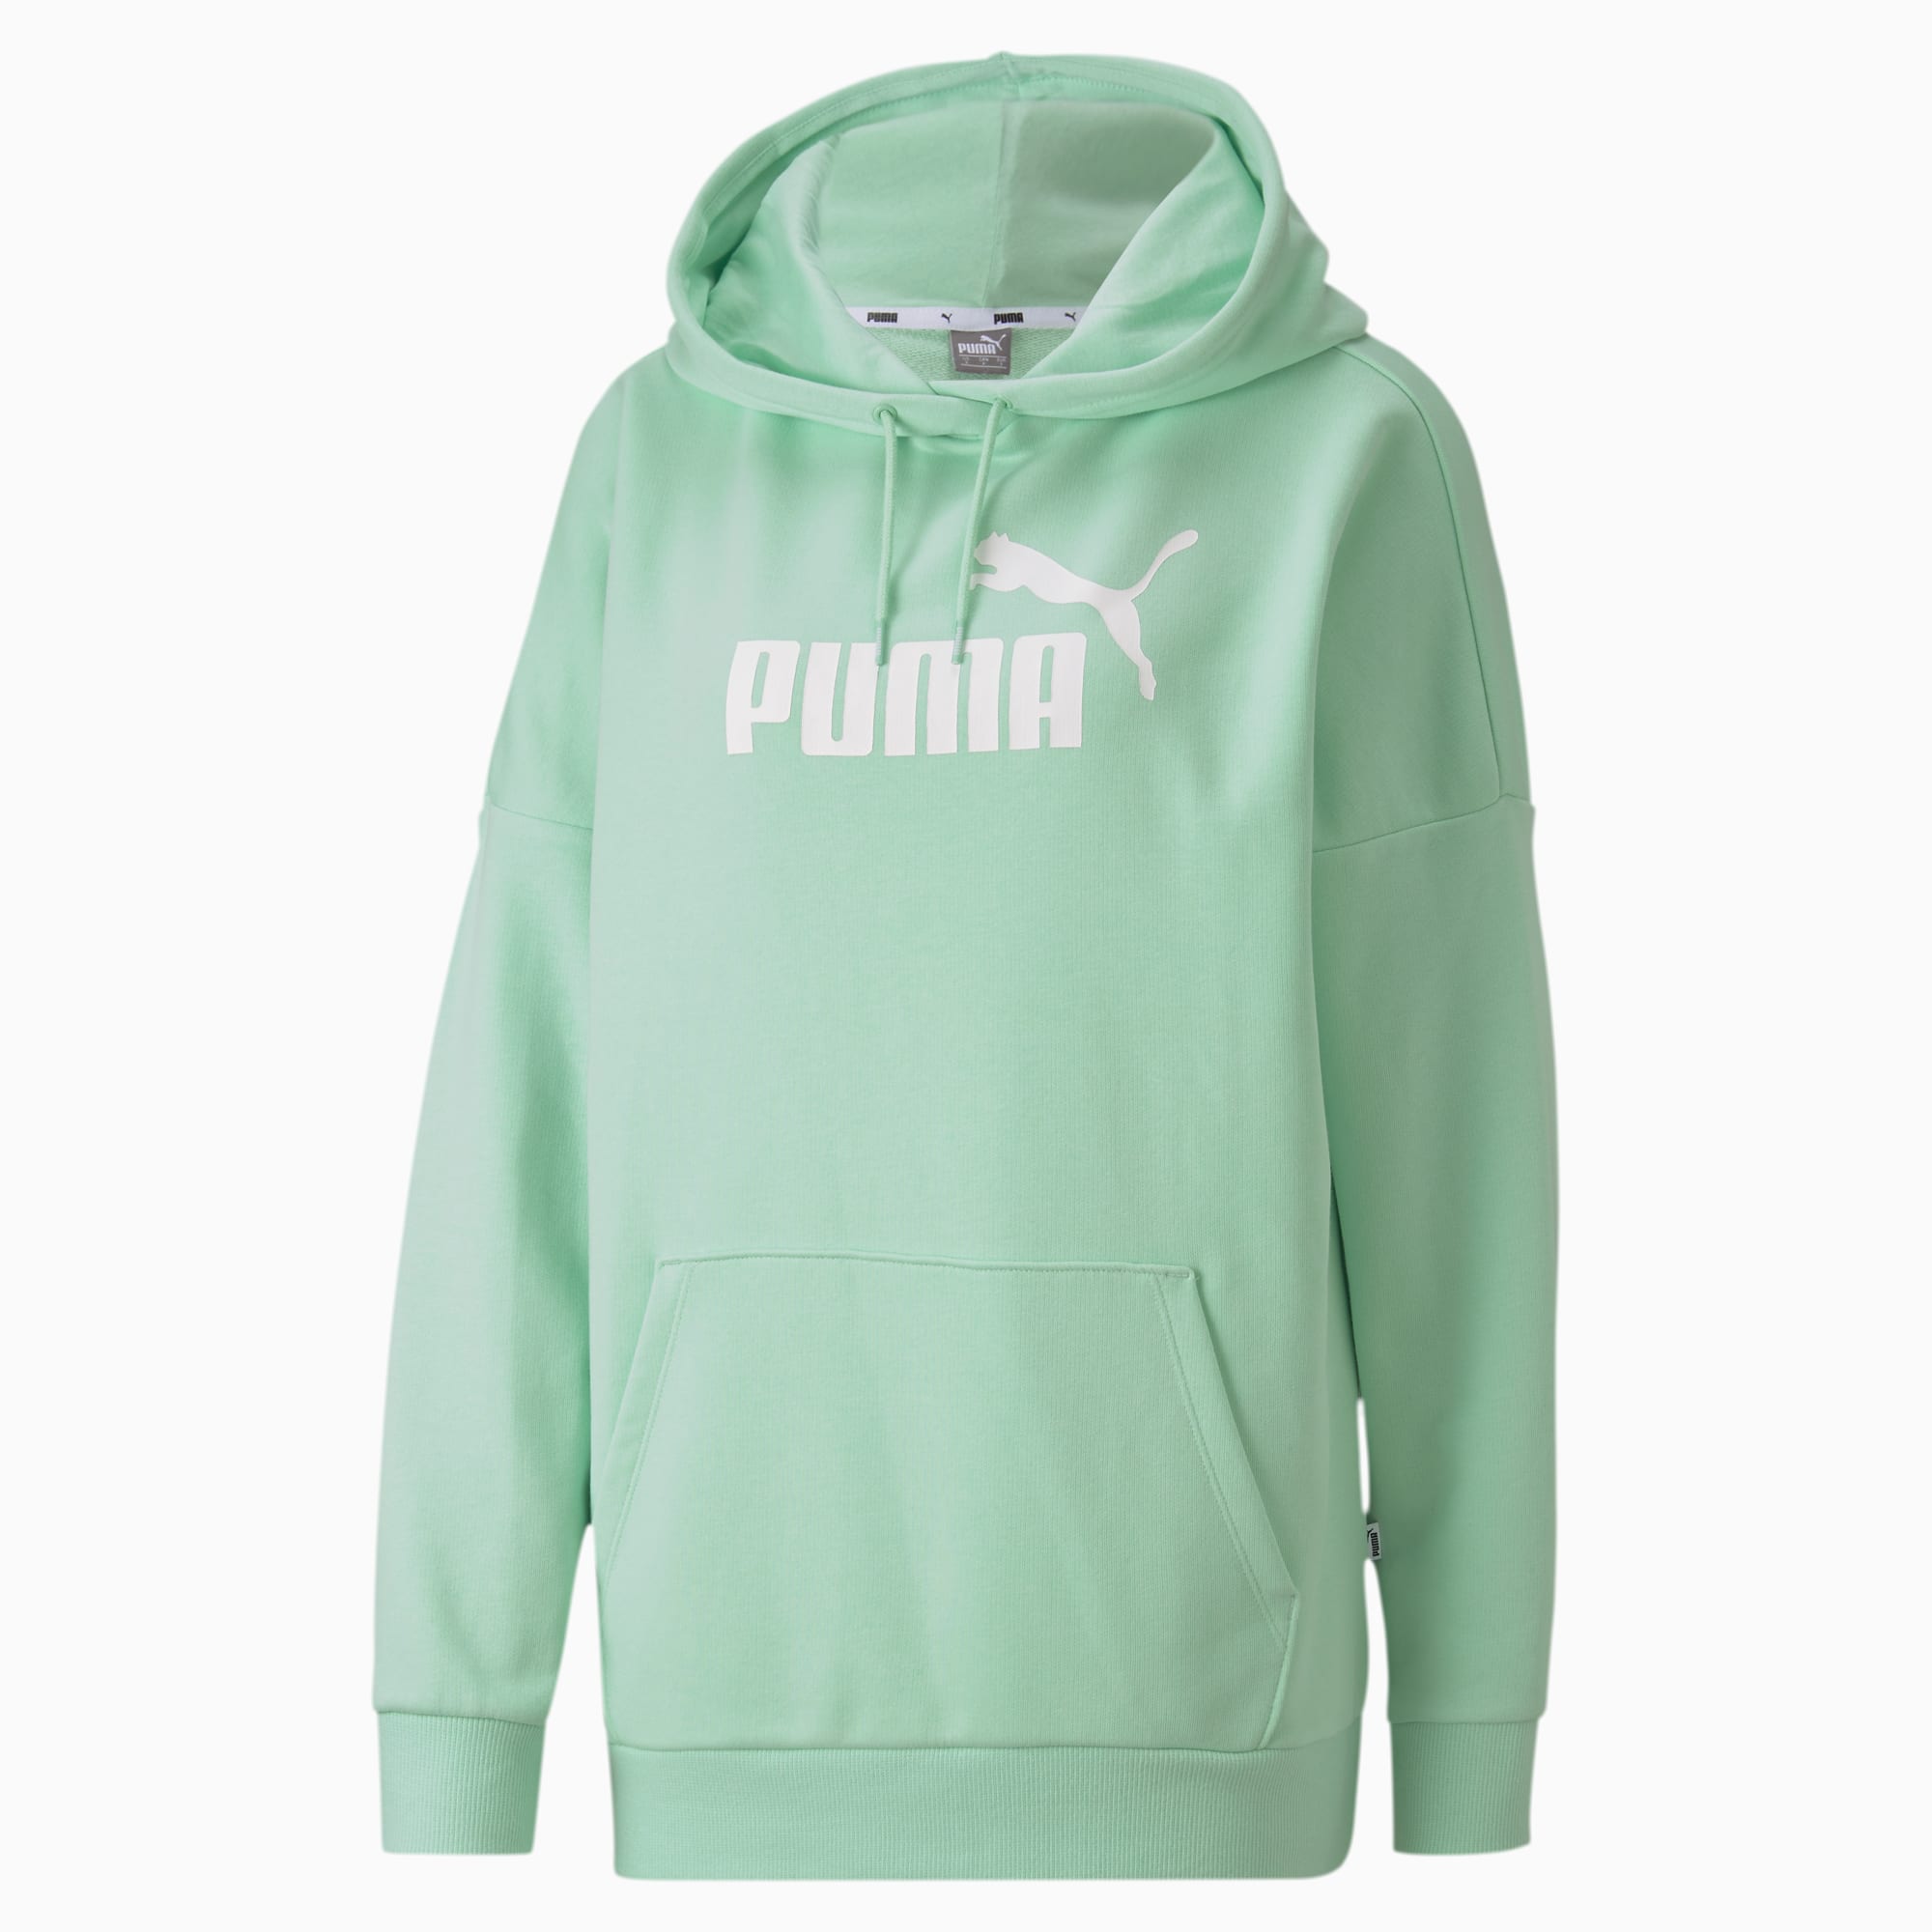 puma jumper green